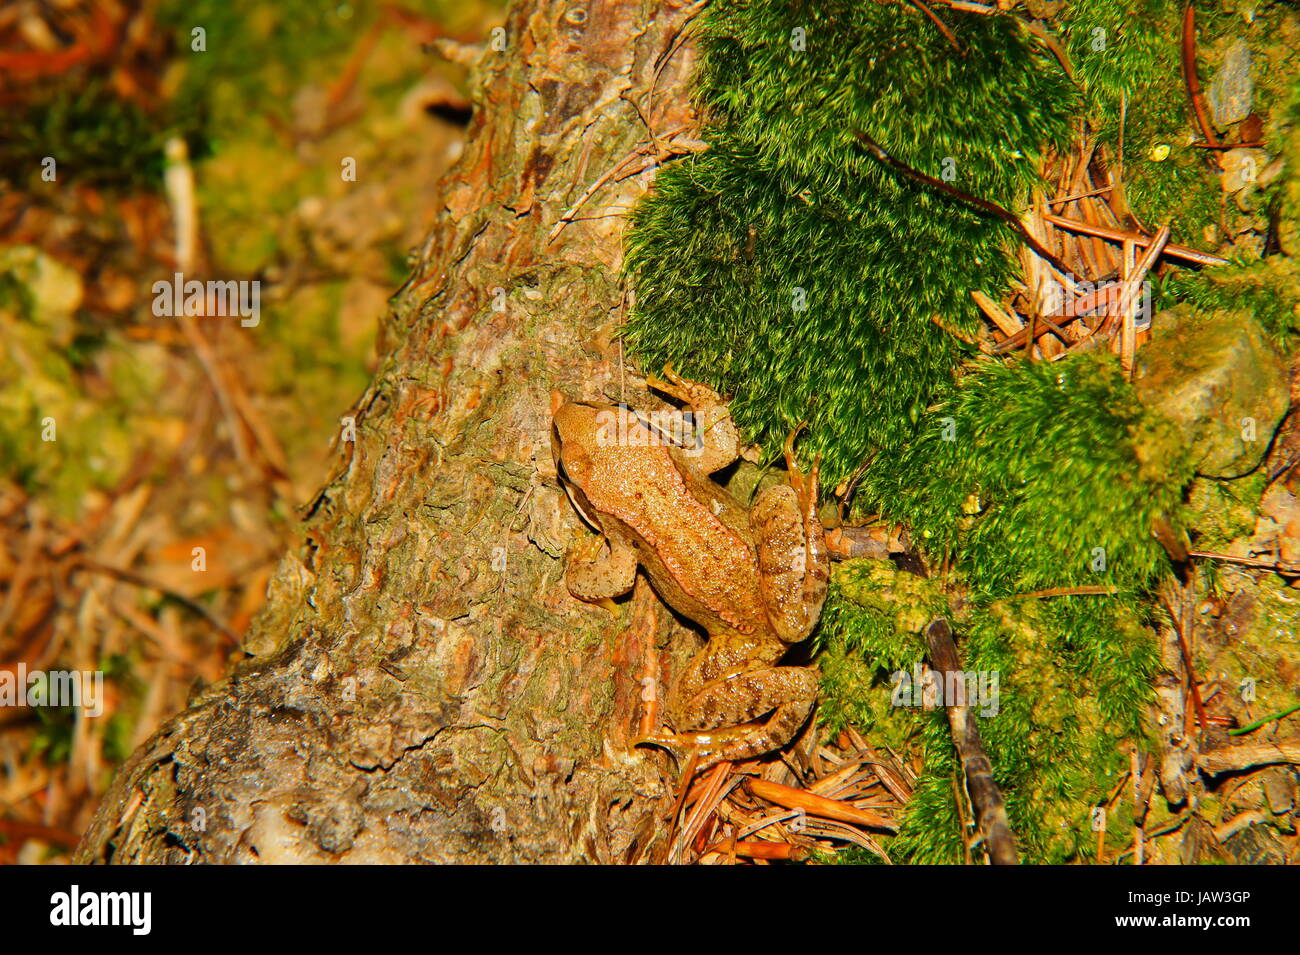 junger Springfrosch auf einem bemoosten Baumstumpf Stock Photo